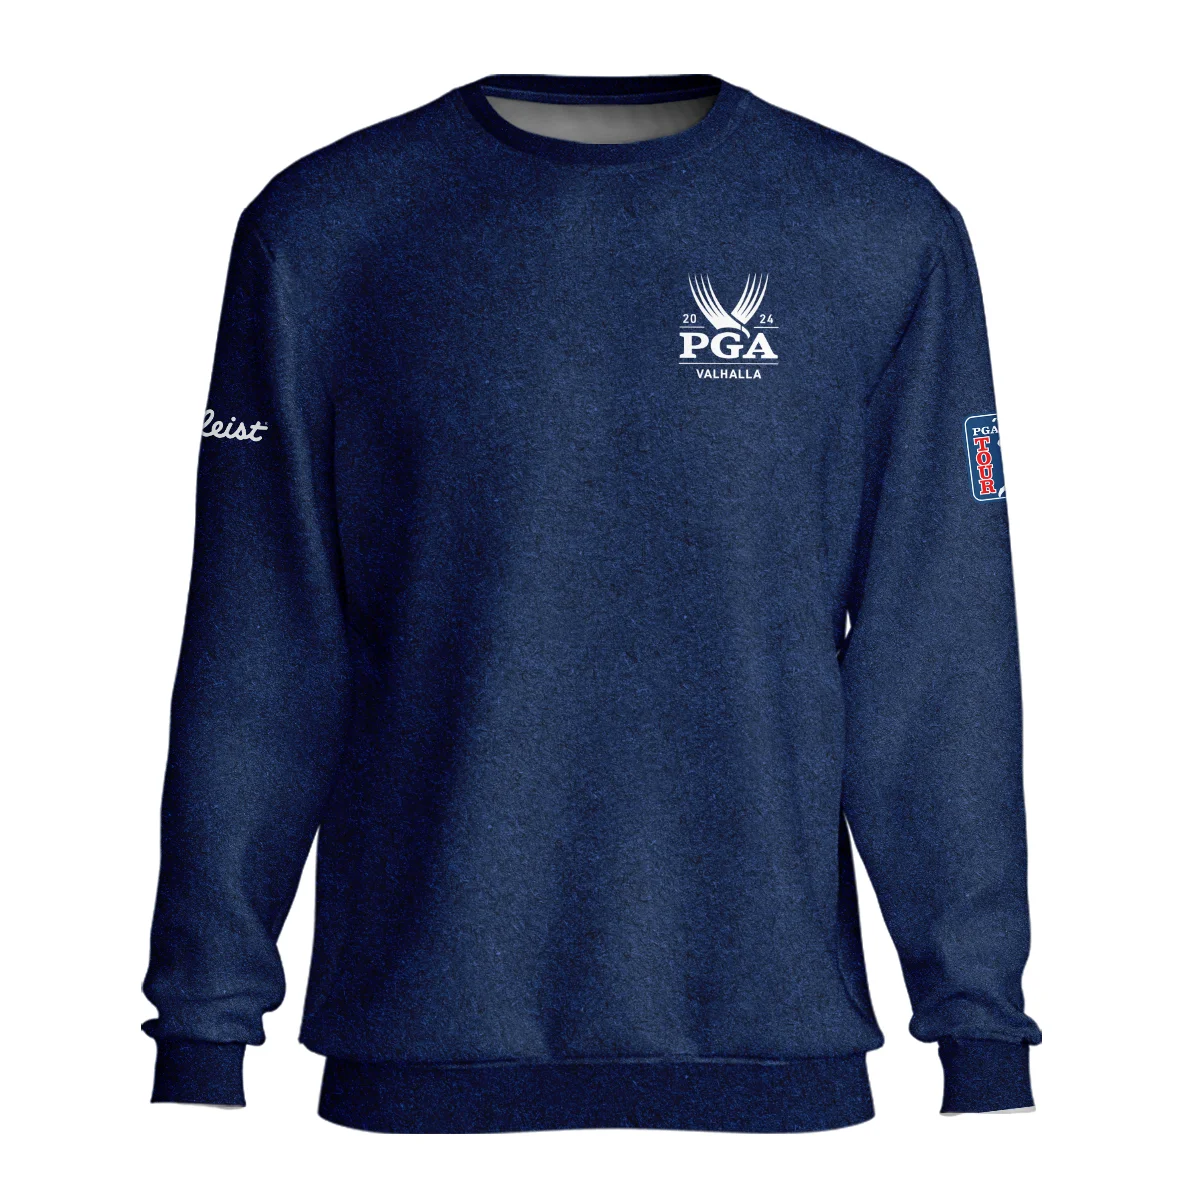 Special Version 2024 PGA Championship Valhalla Titleist Unisex Sweatshirt Blue Paperboard Texture Sweatshirt